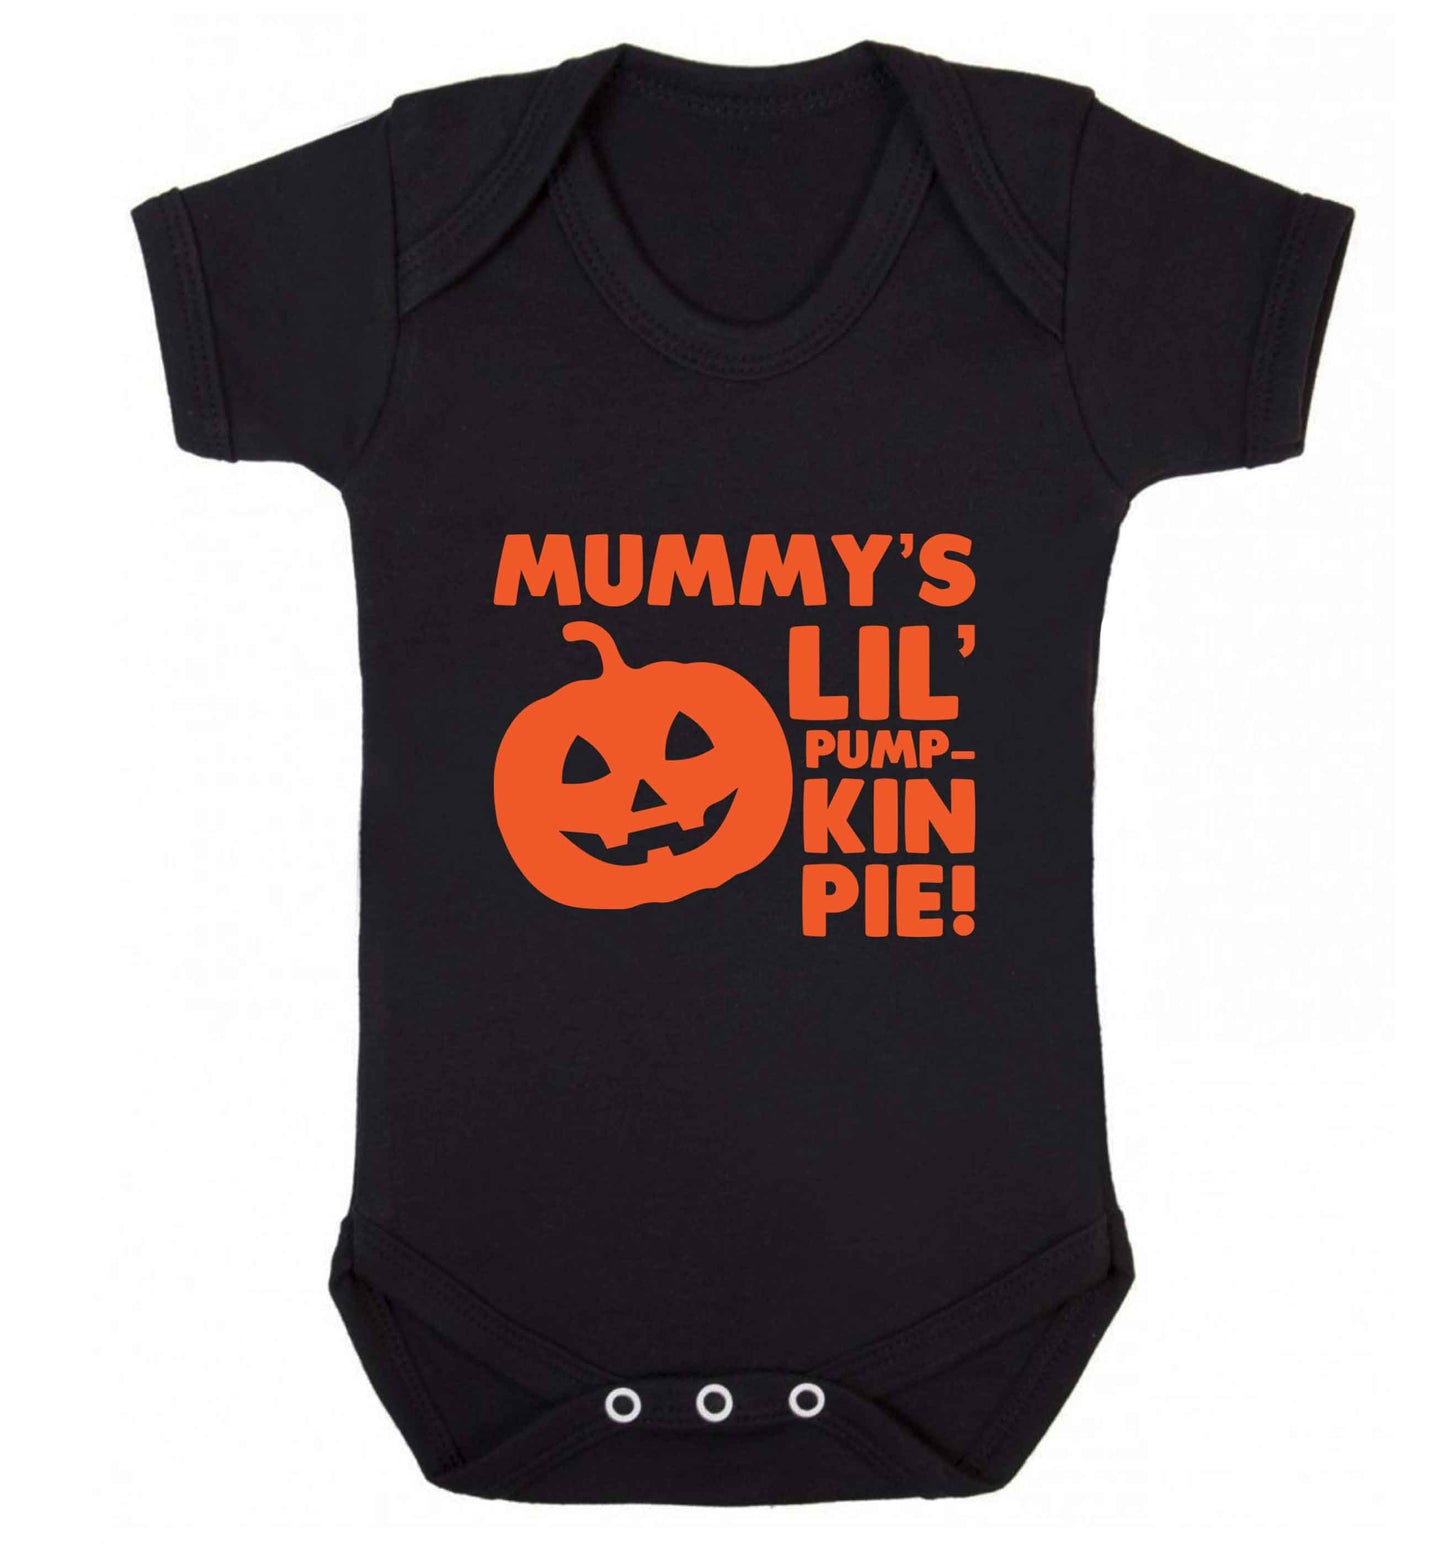 Mummy's lil' pumpkin pie baby vest black 18-24 months